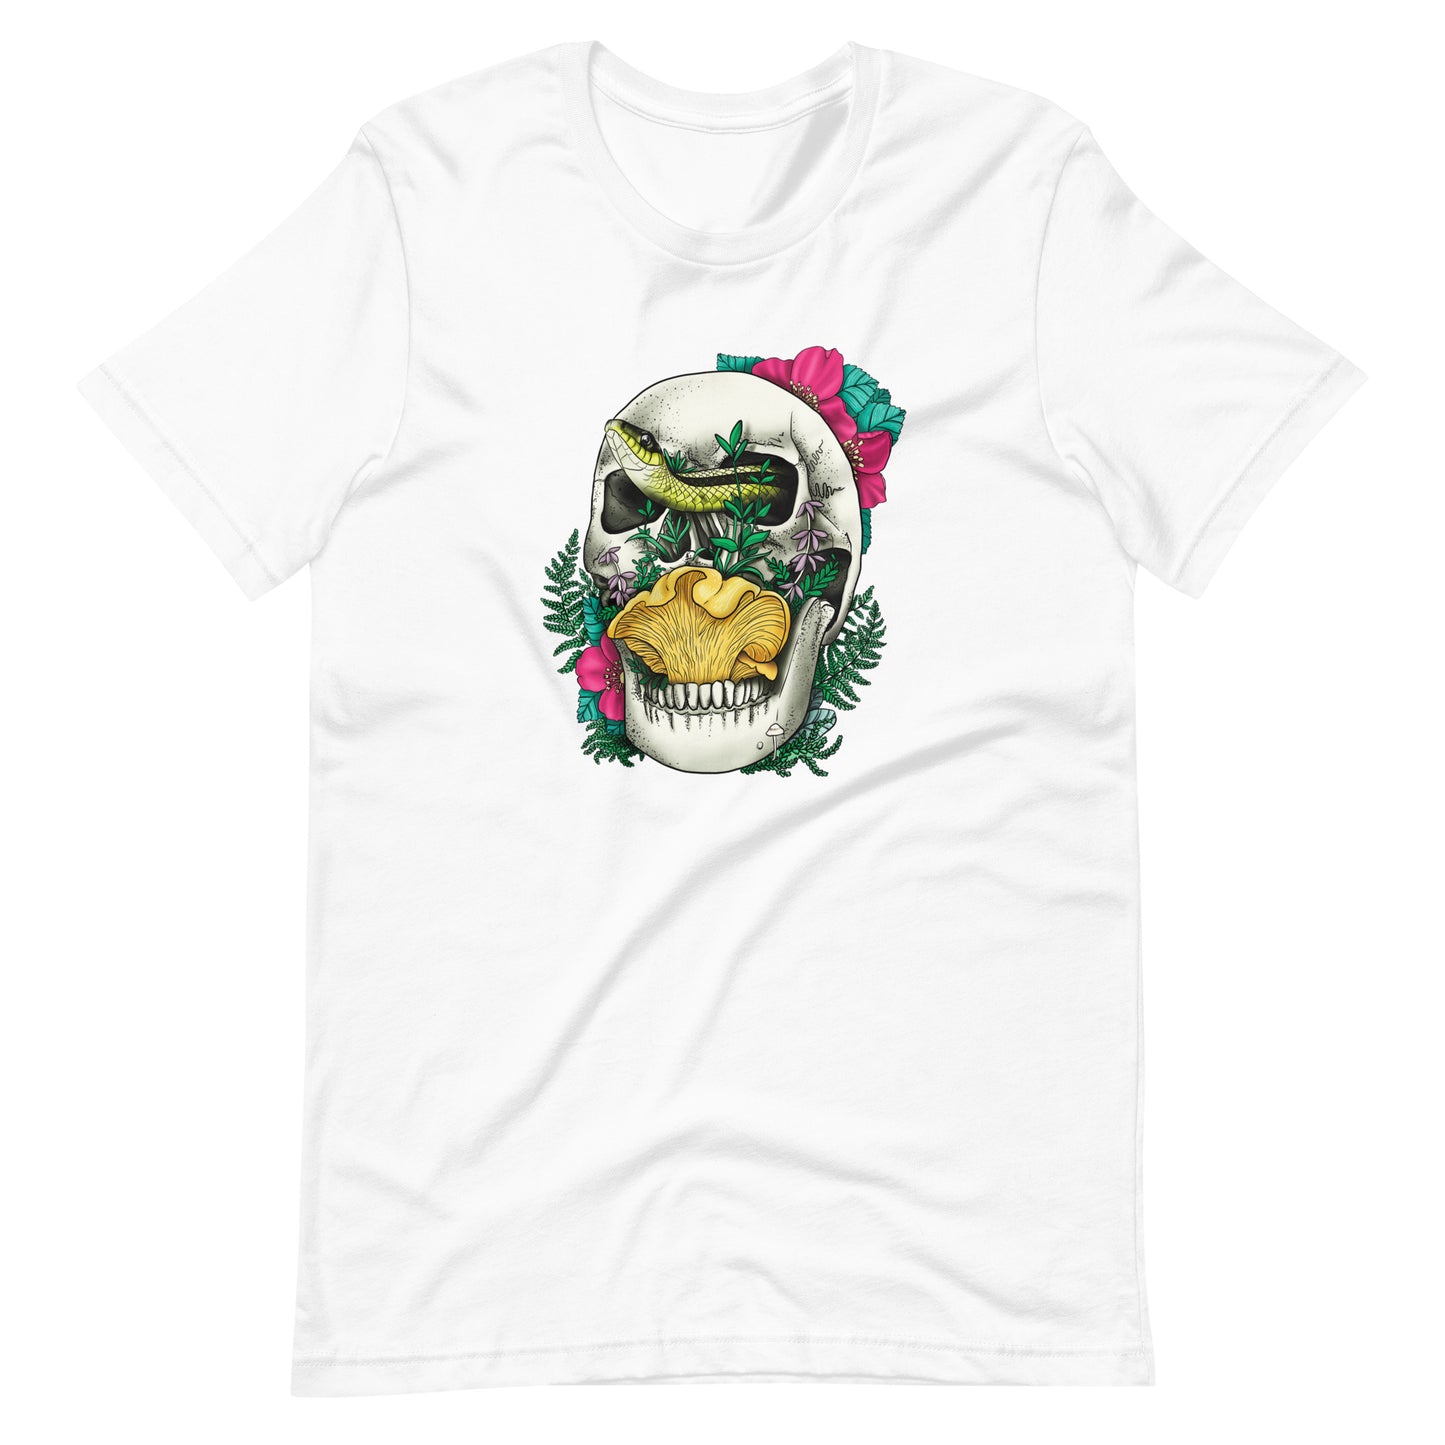 Skull, Snake and Chanterelle Mushroom | Unisex T-Shirt | Morbid Mushroom Apparel